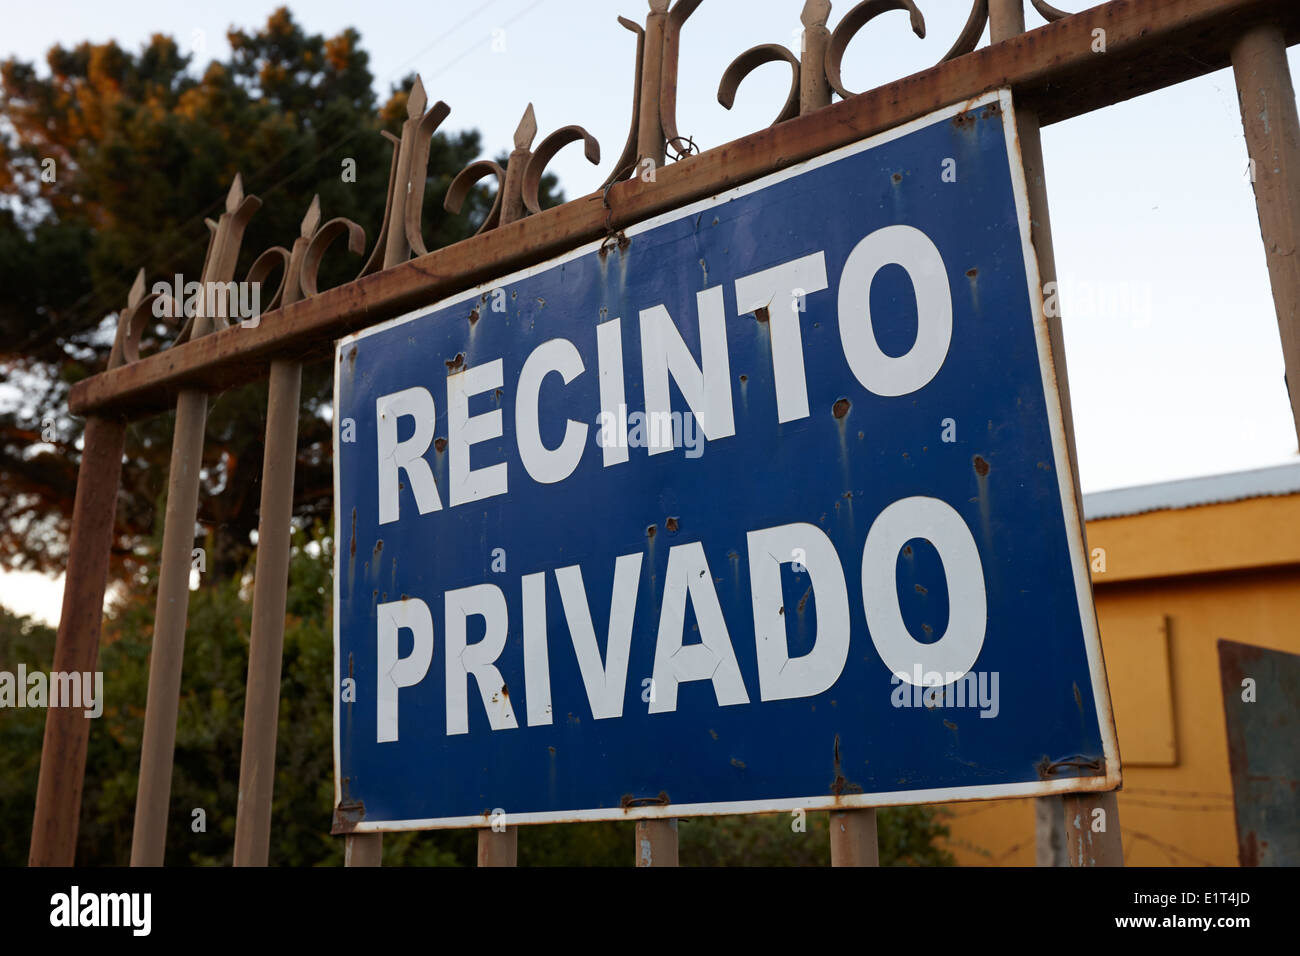 recinto privado private area sign on a gate in los pellines chile Stock Photo